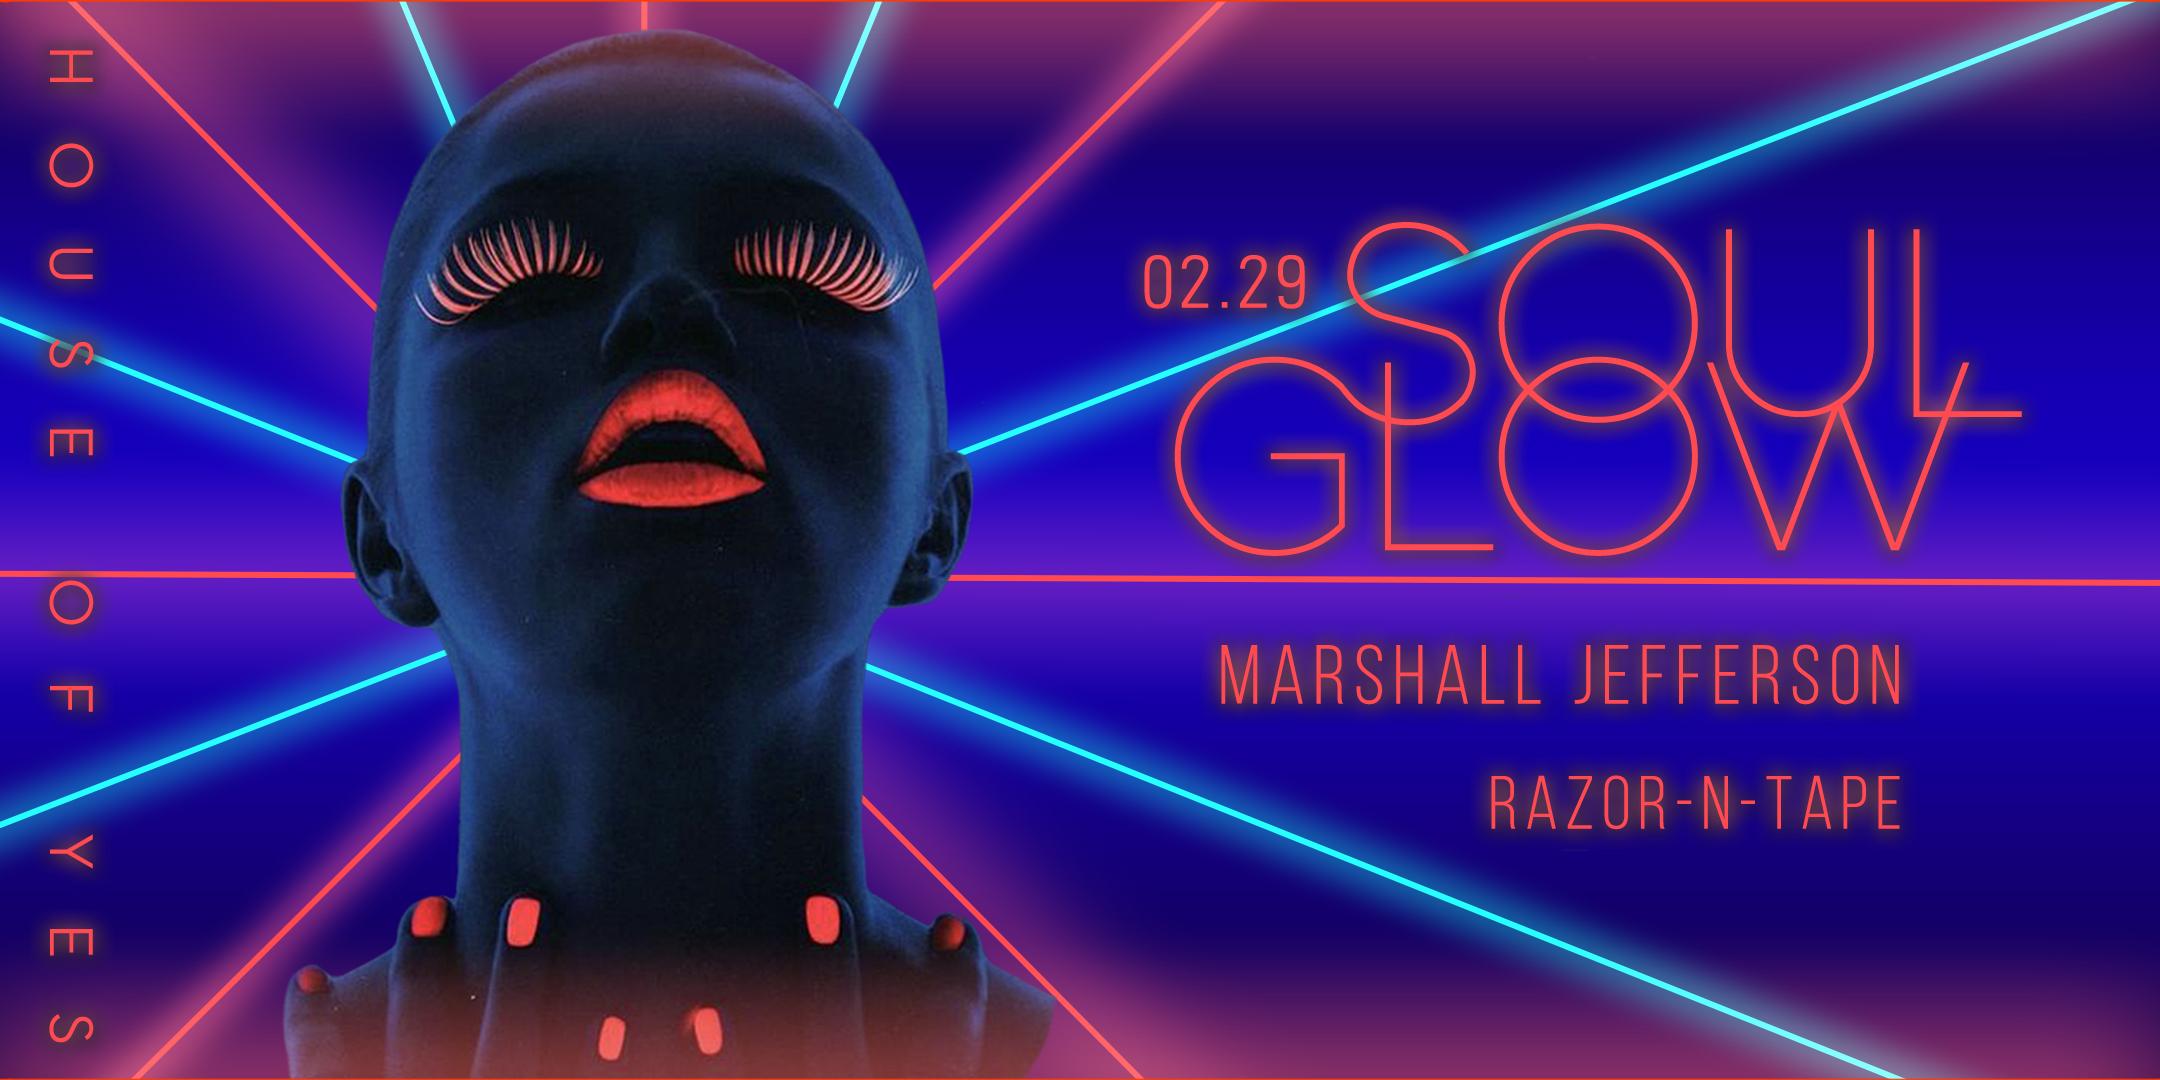 Soul Glow with Marshall Jefferson, Razor-N-Tape